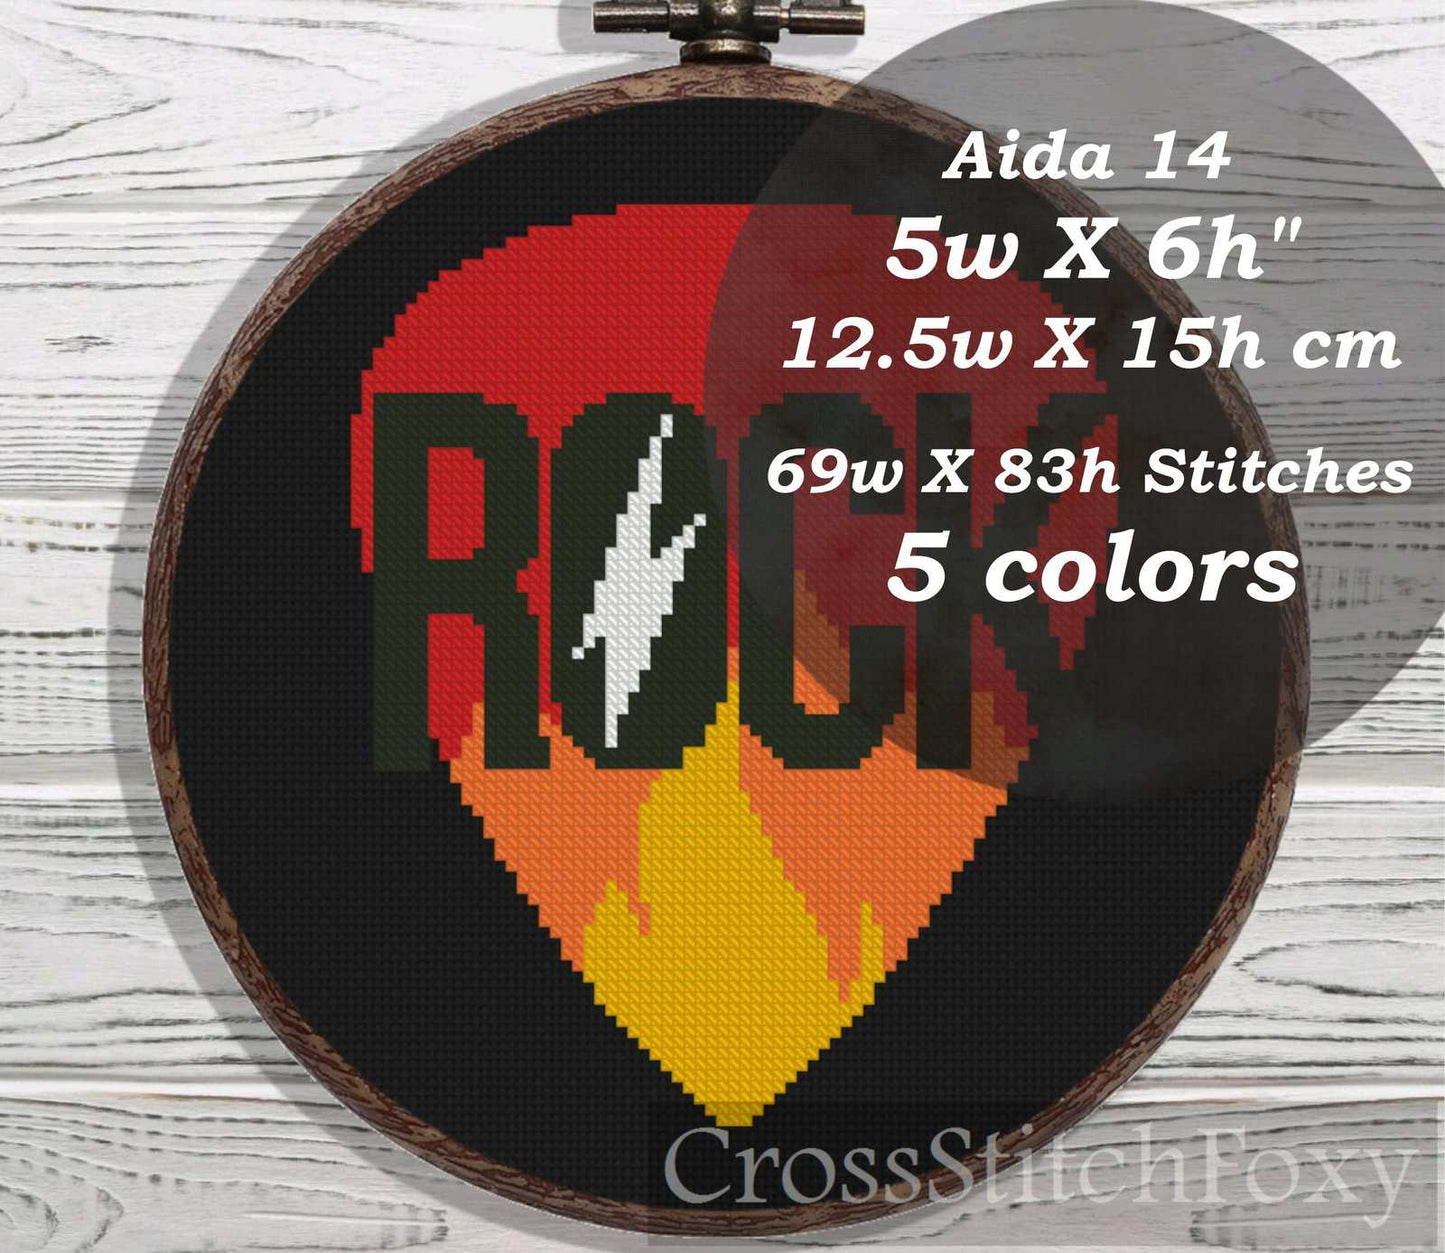 Rock cross stitch pattern